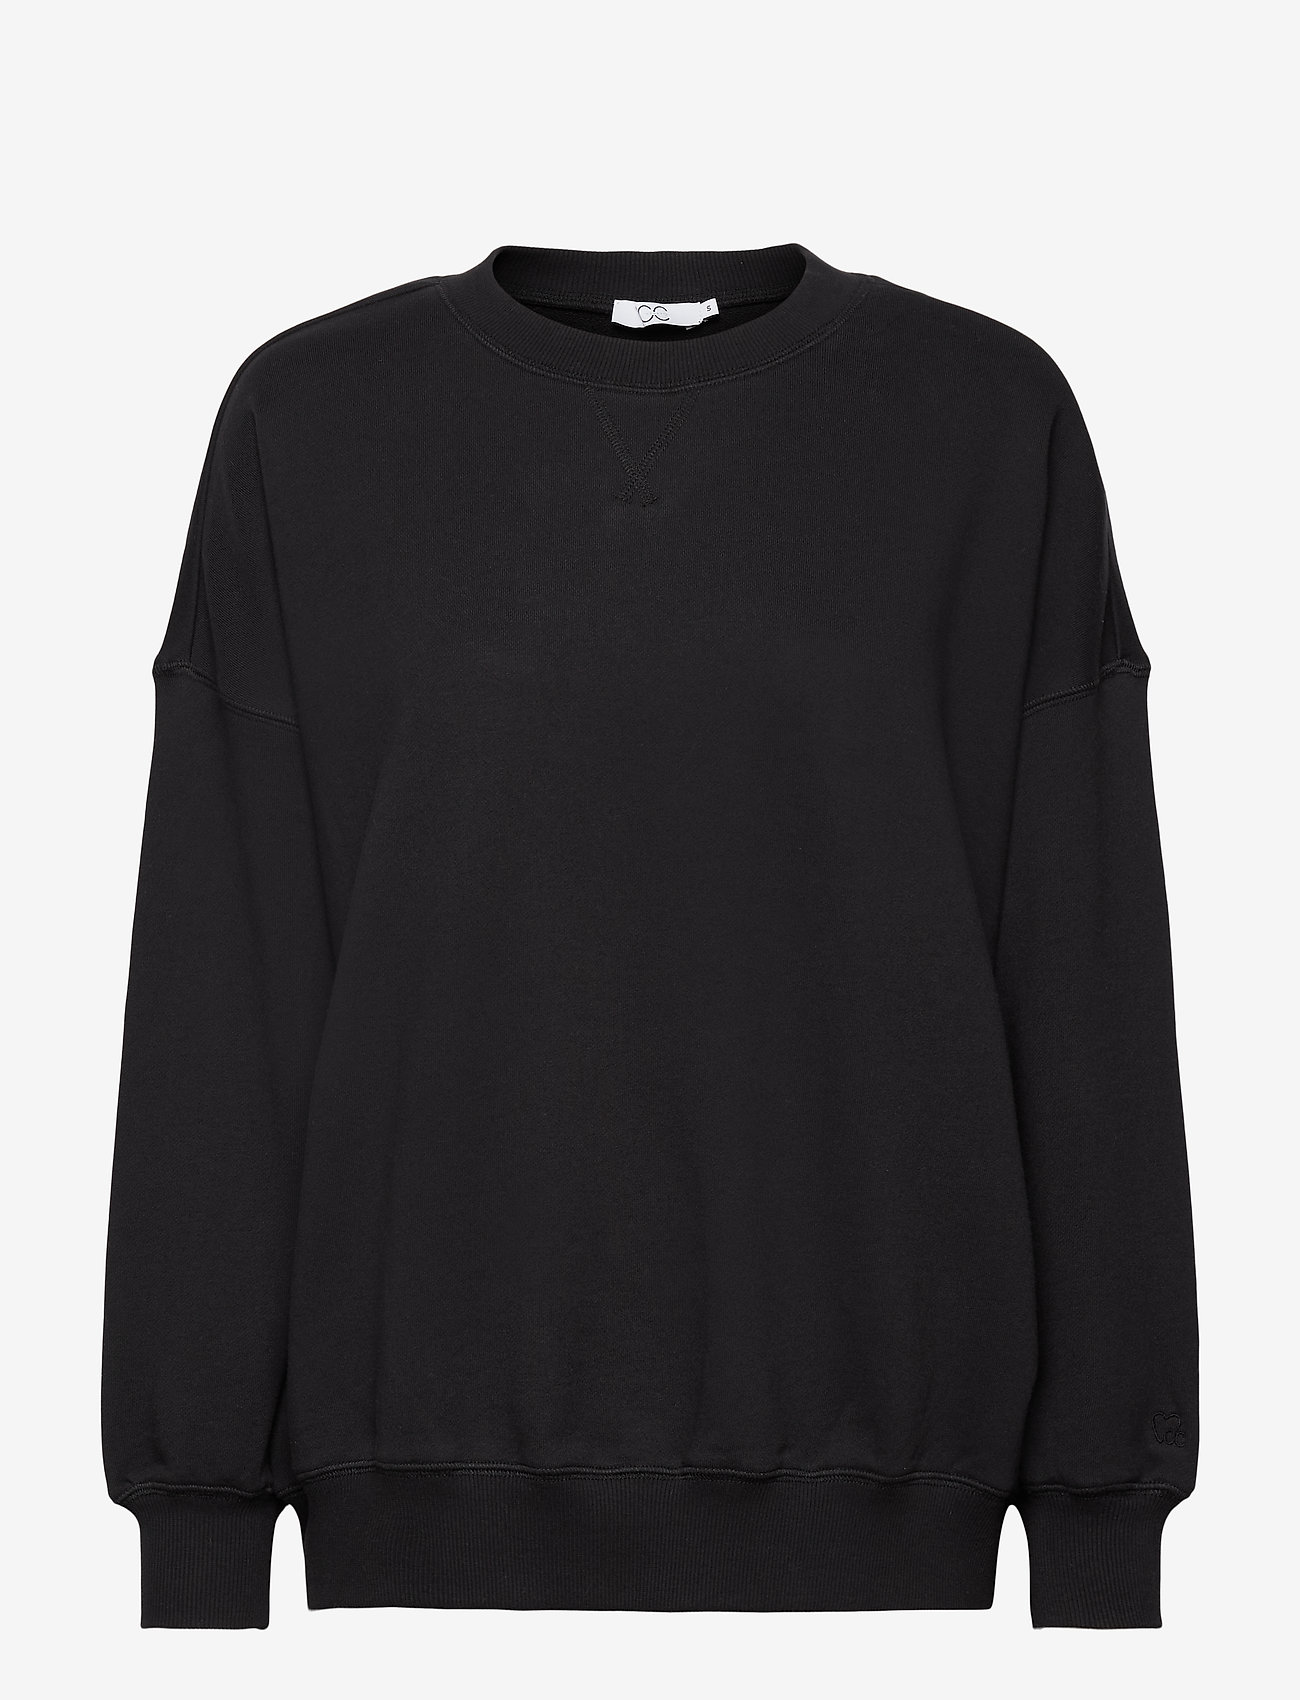 Coster Copenhagen - CC Heart oversize sweatshirt - hettegensere - black - 0